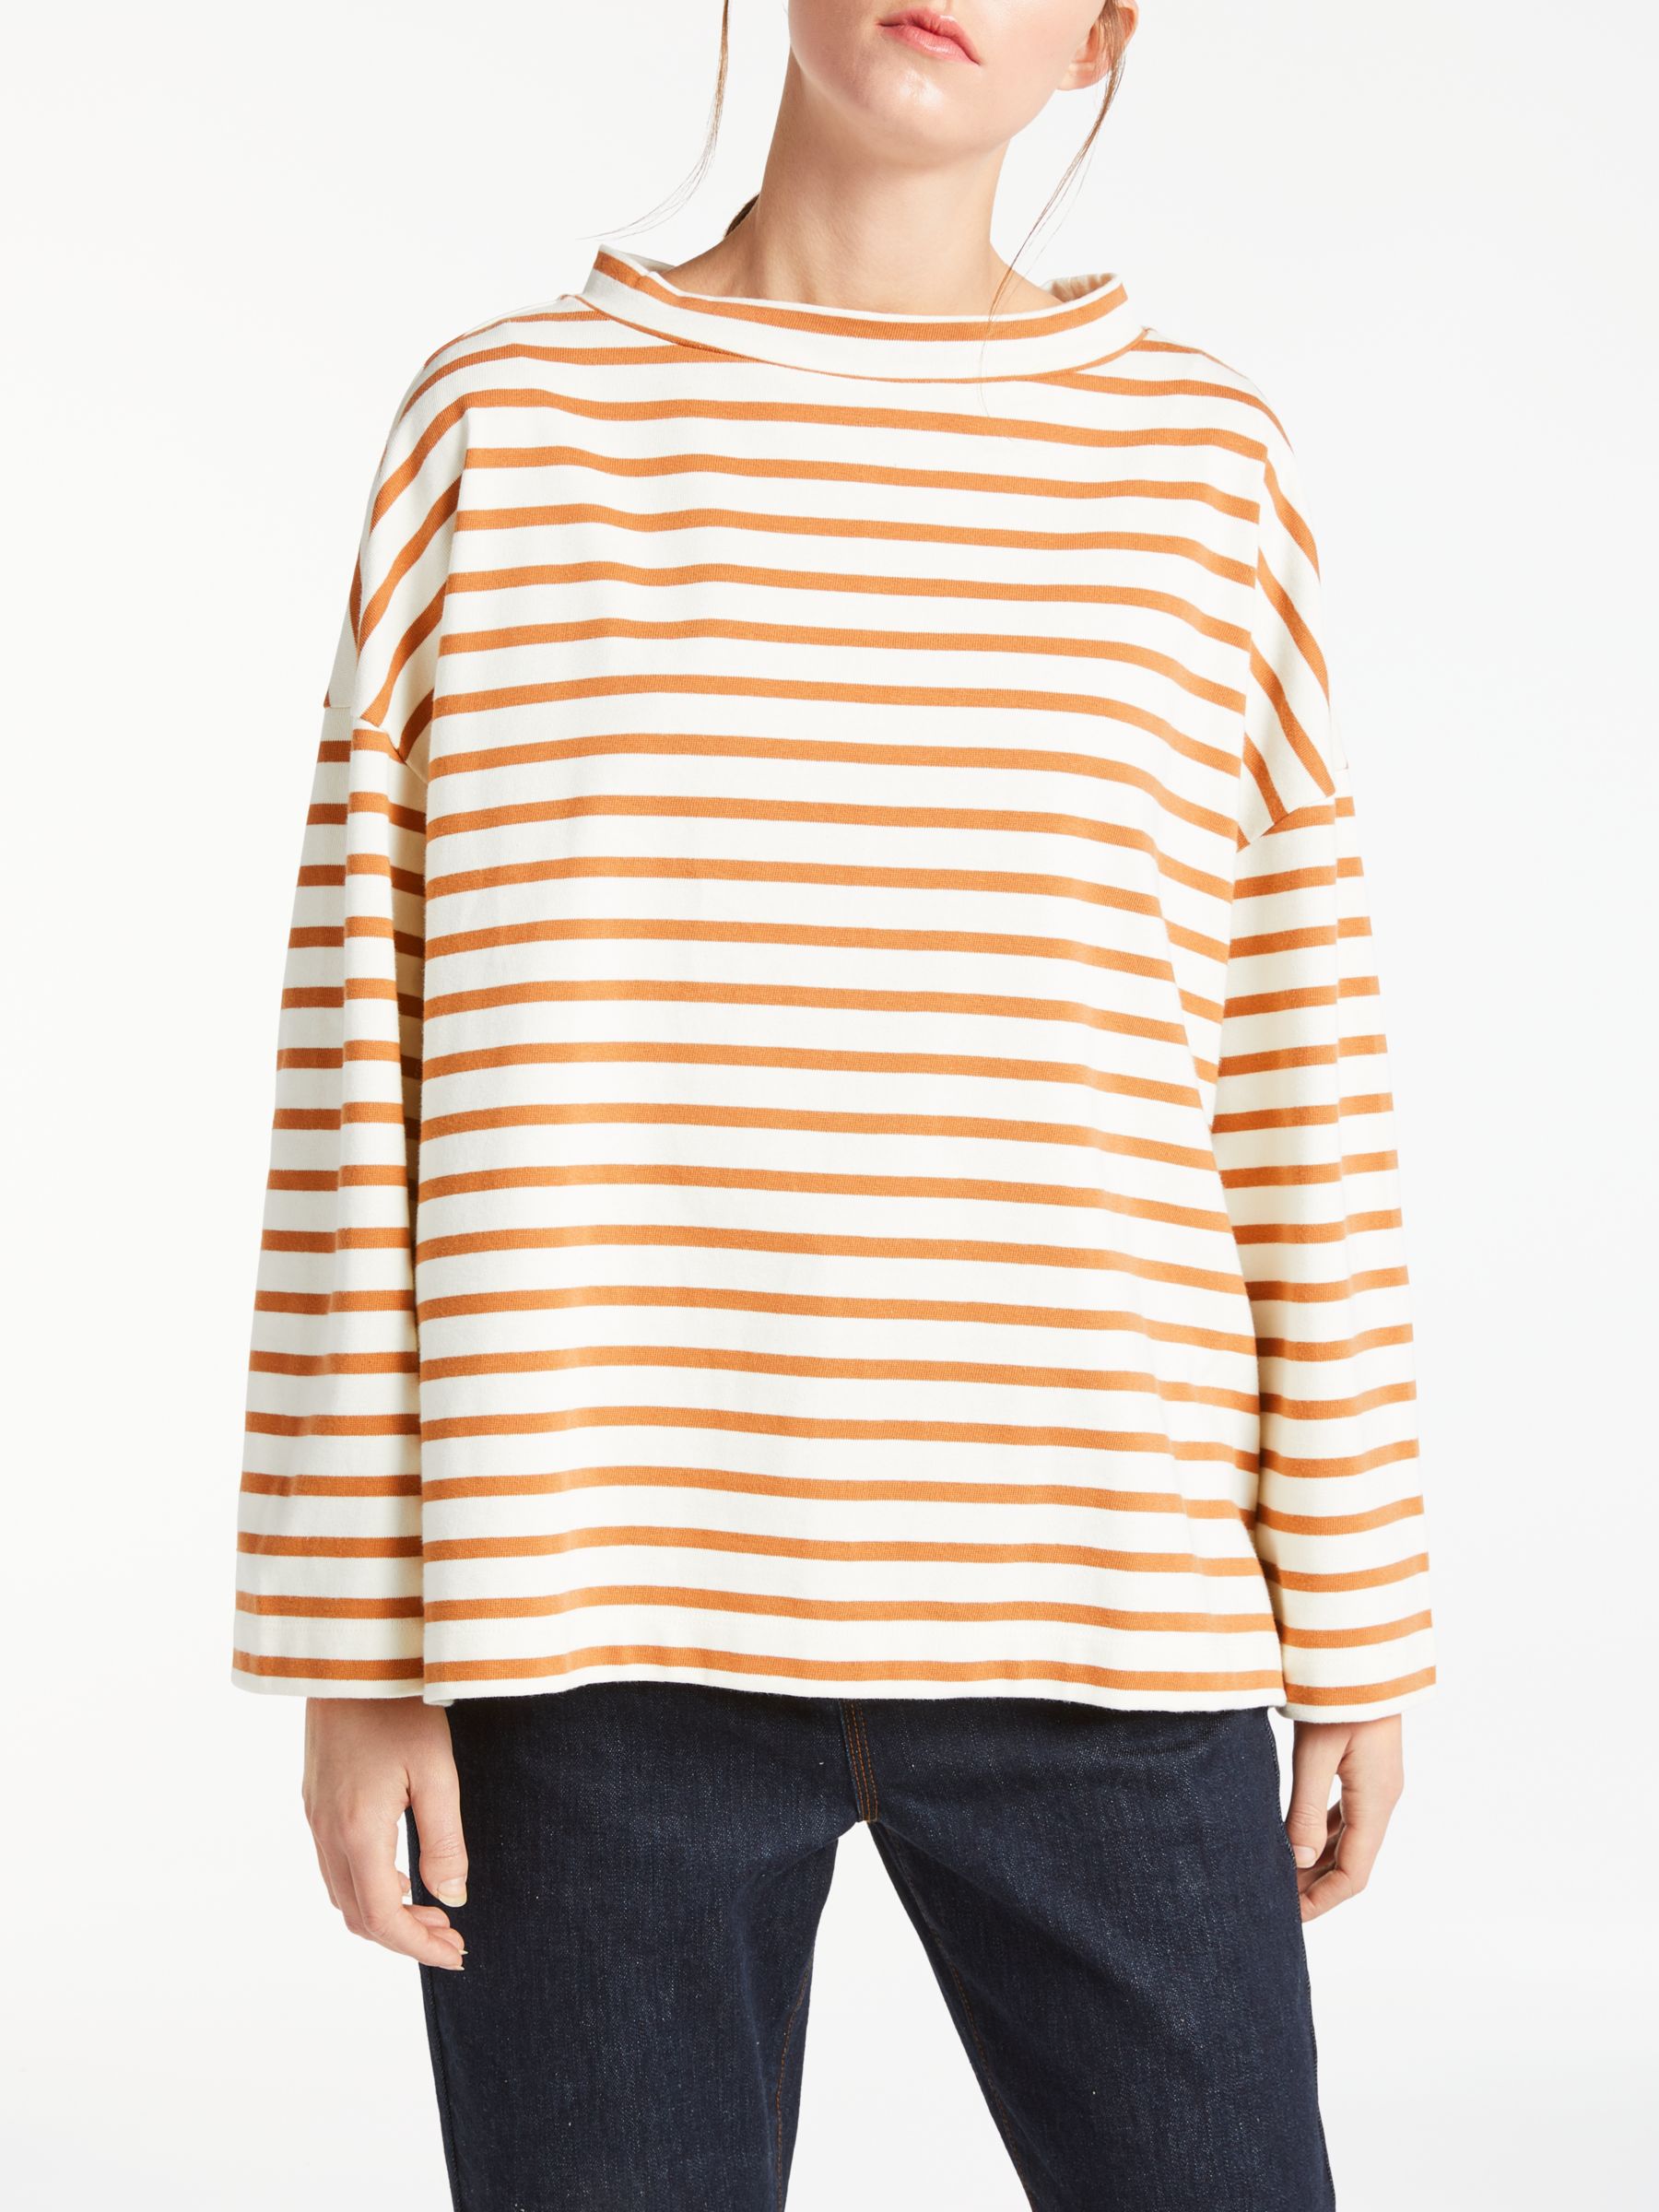 Kin Stripe Mock Neck T-Shirt, Brown/White, L